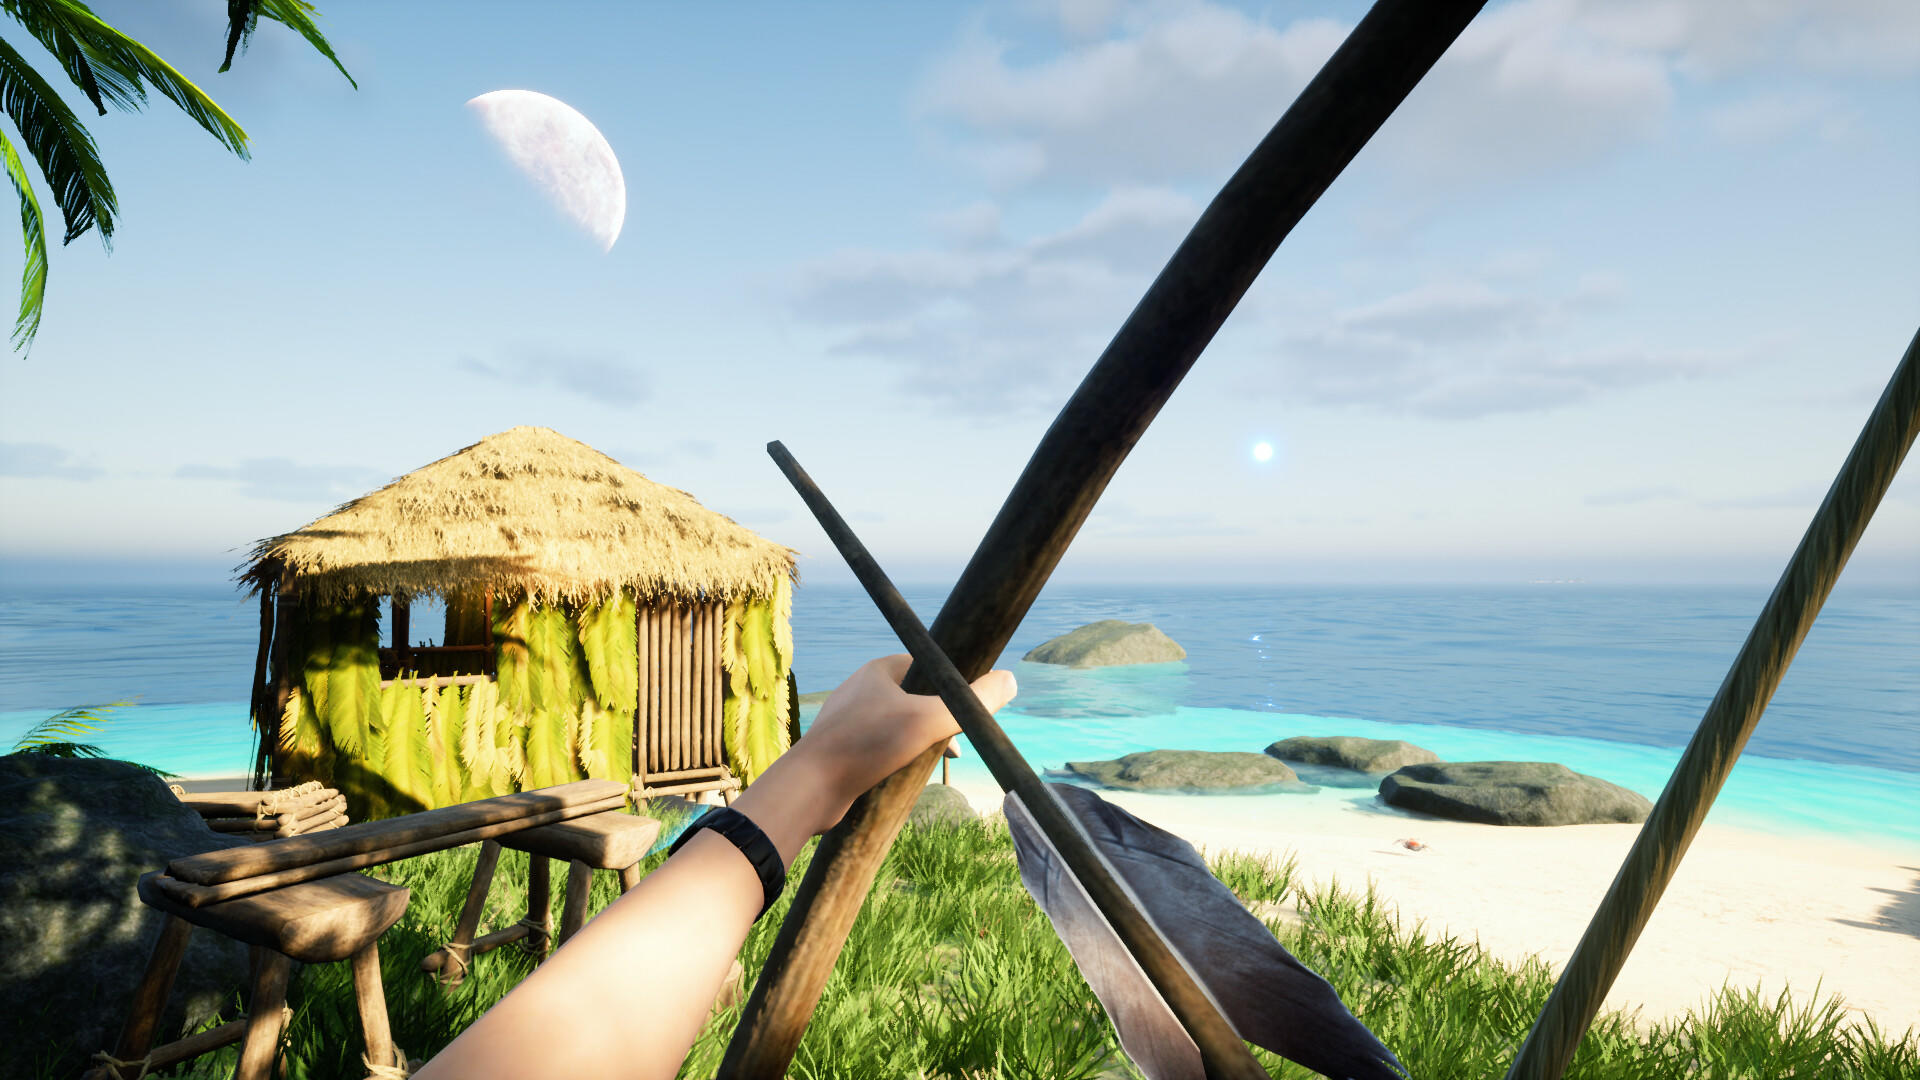 Under A New Sun screenshot game